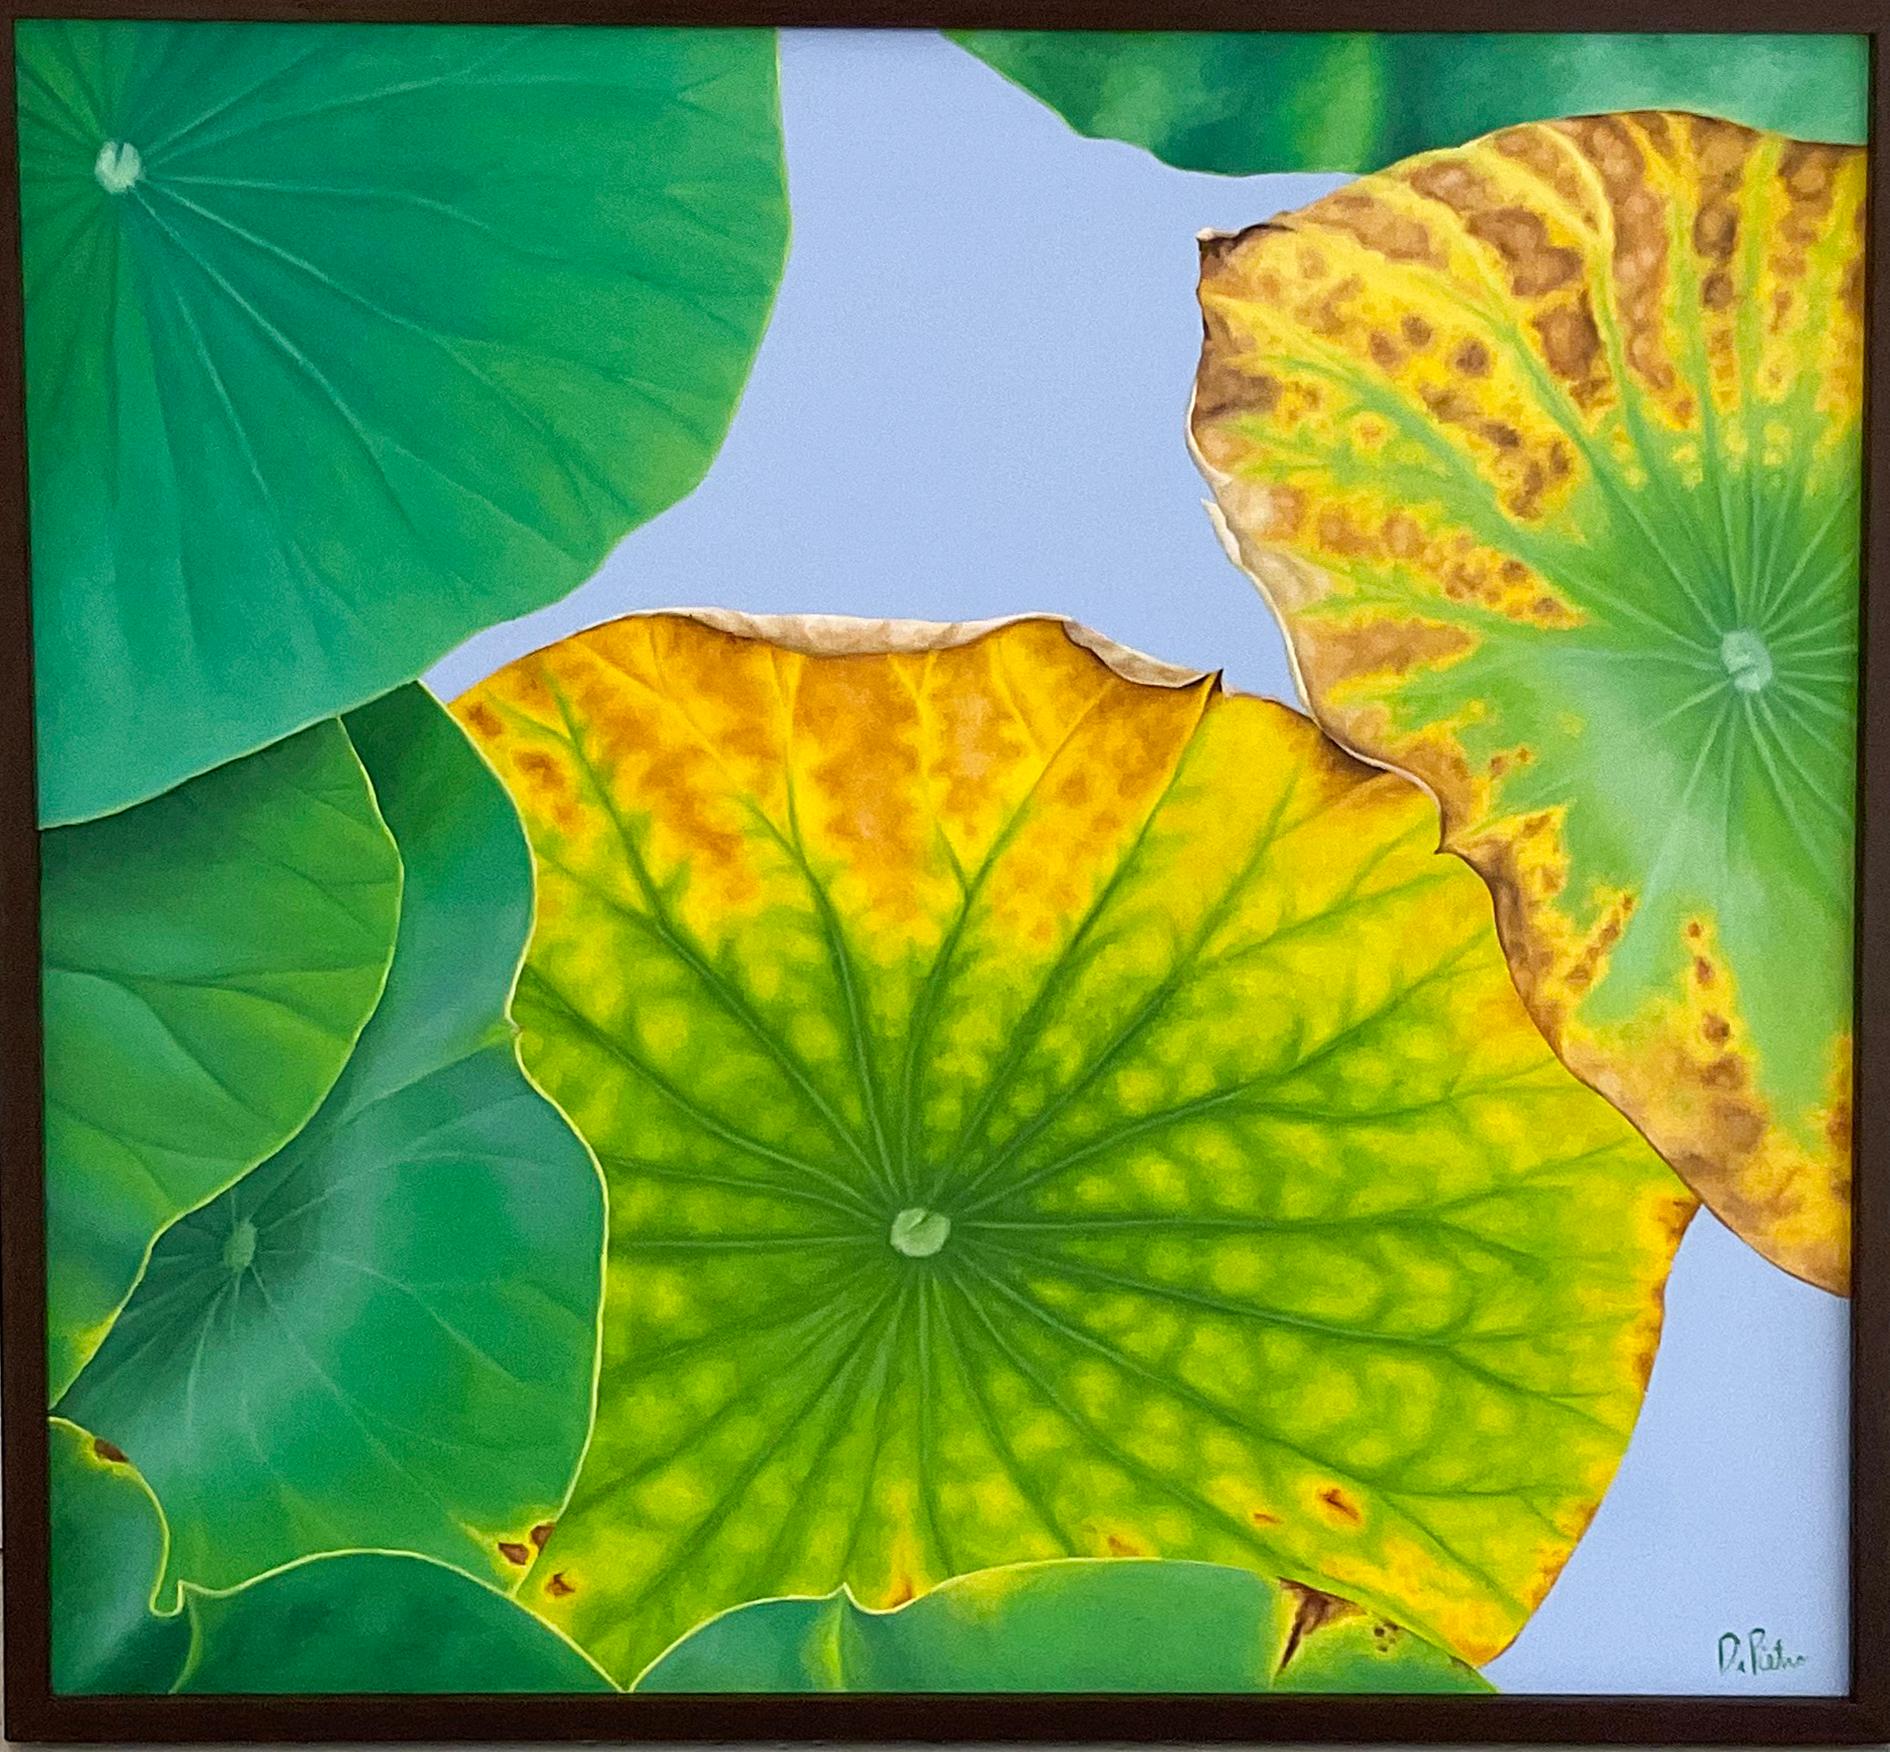 Lotus 30 : Nature morte réaliste photographique d'une feuille de lotus verte sur gris 